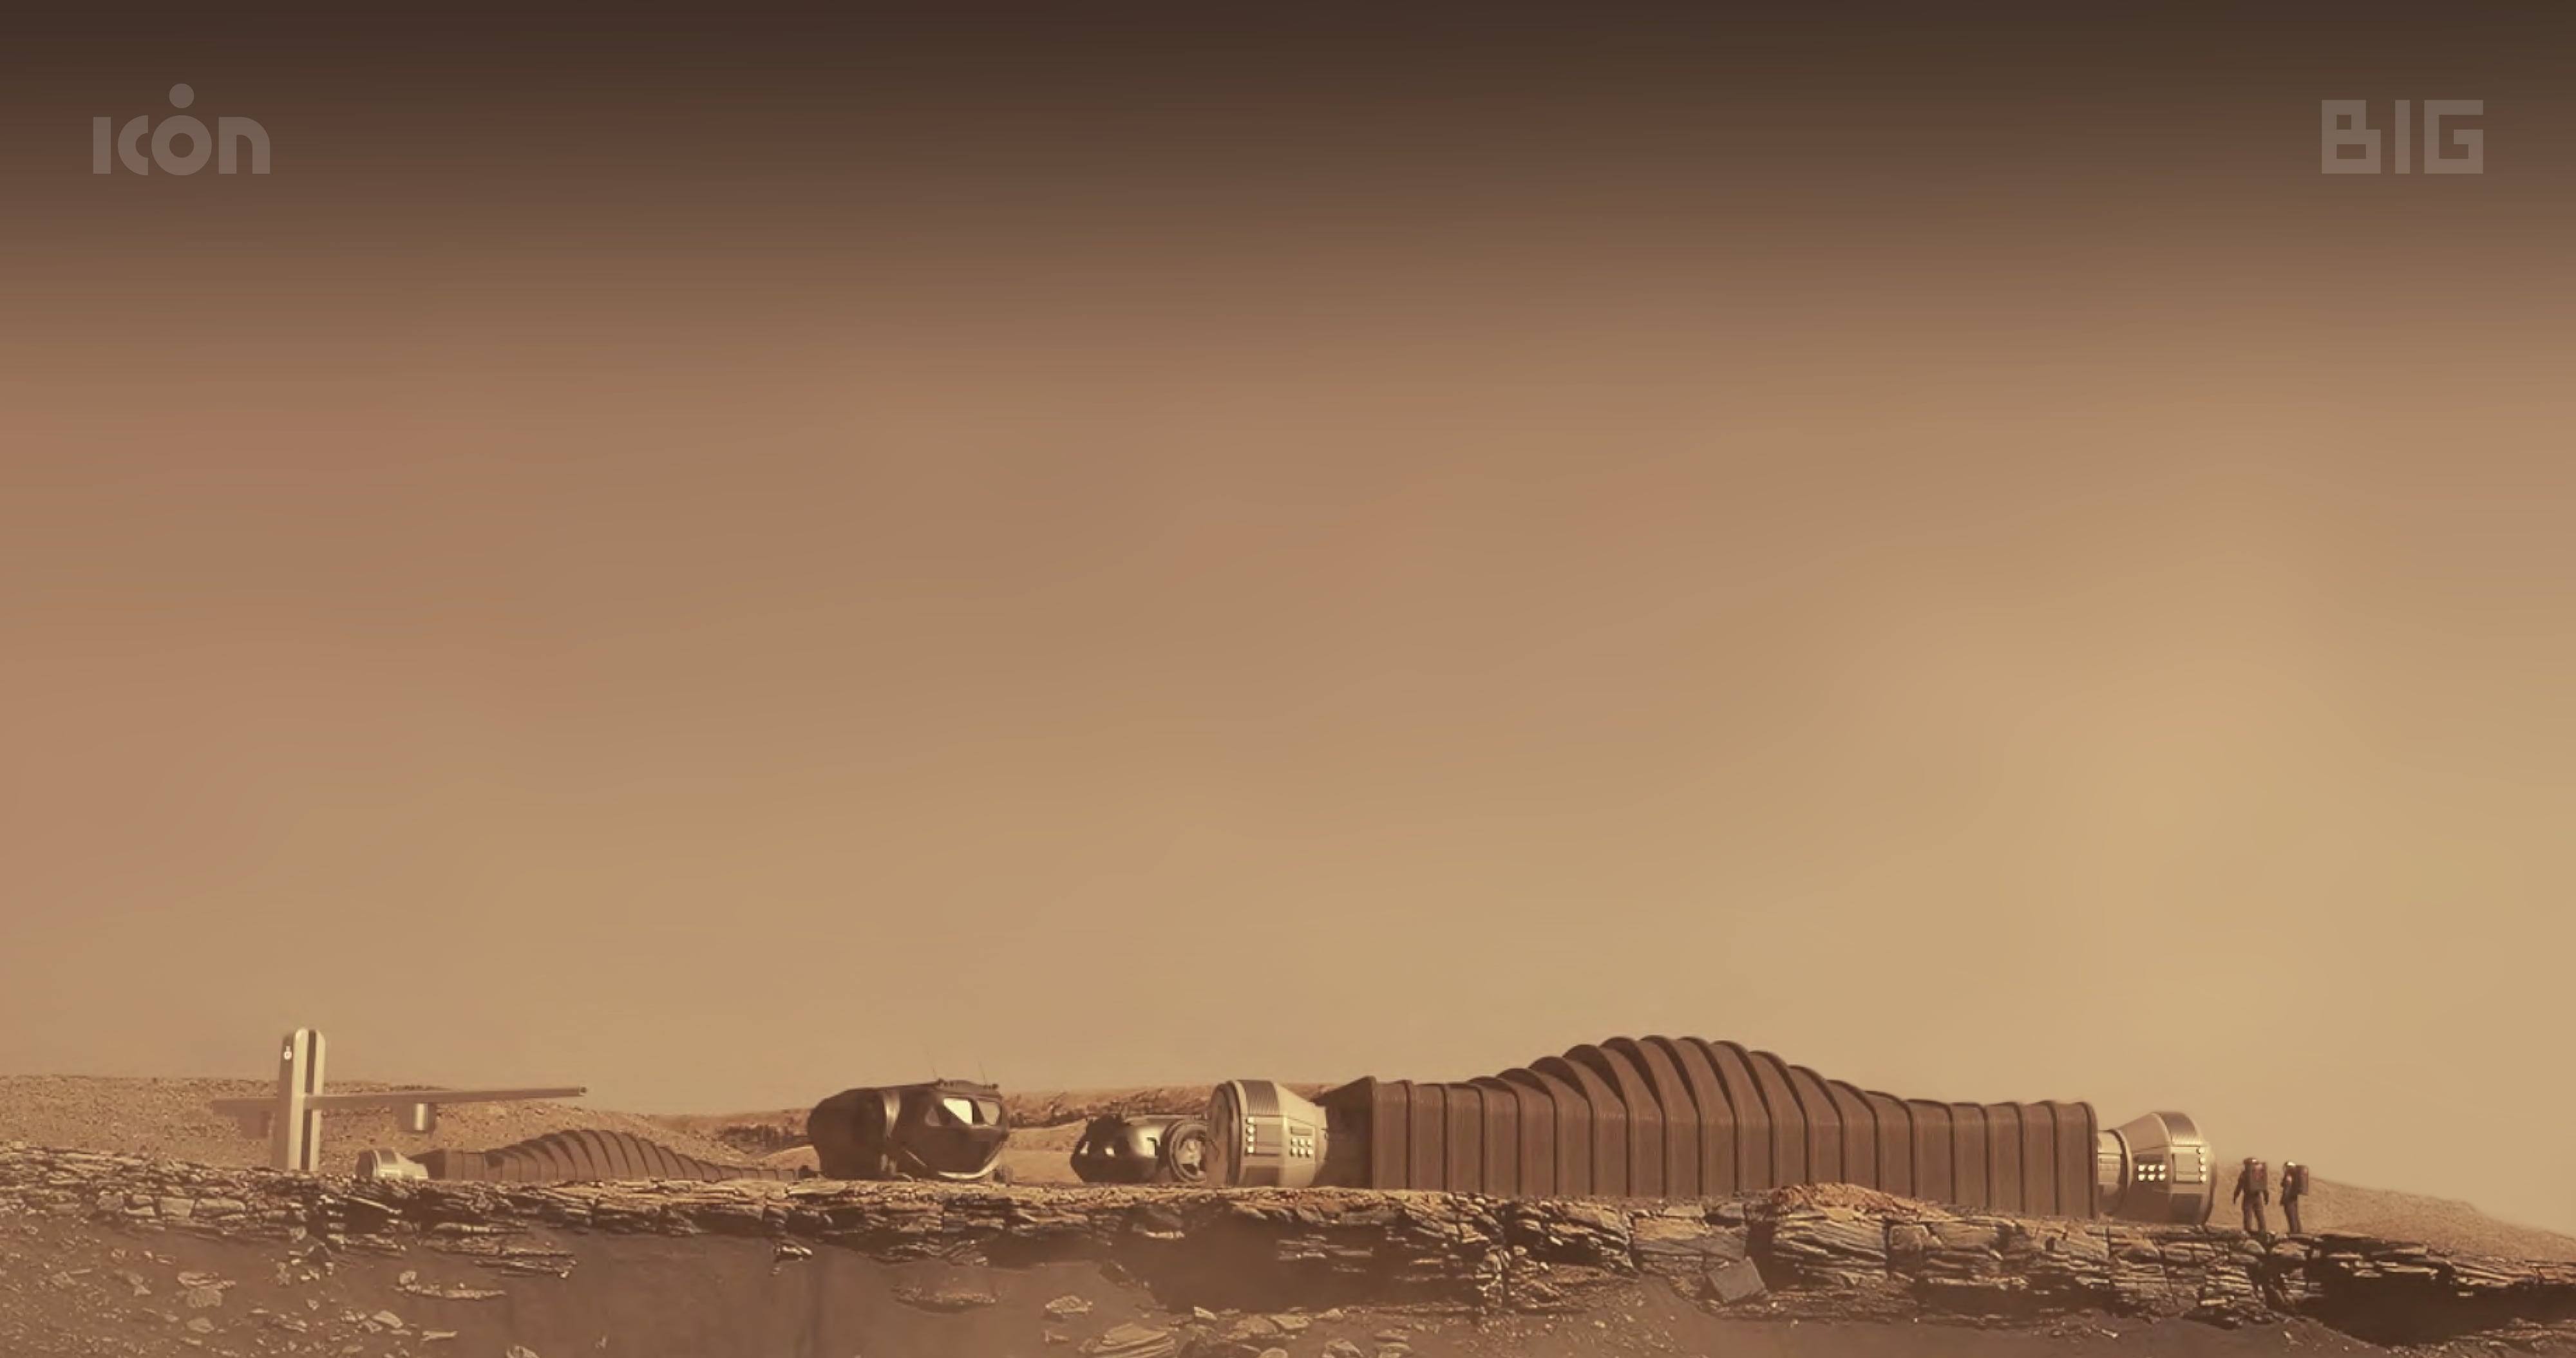 Proyecto de una colonia espacial a futuro en Marte (Gentileza Icon)